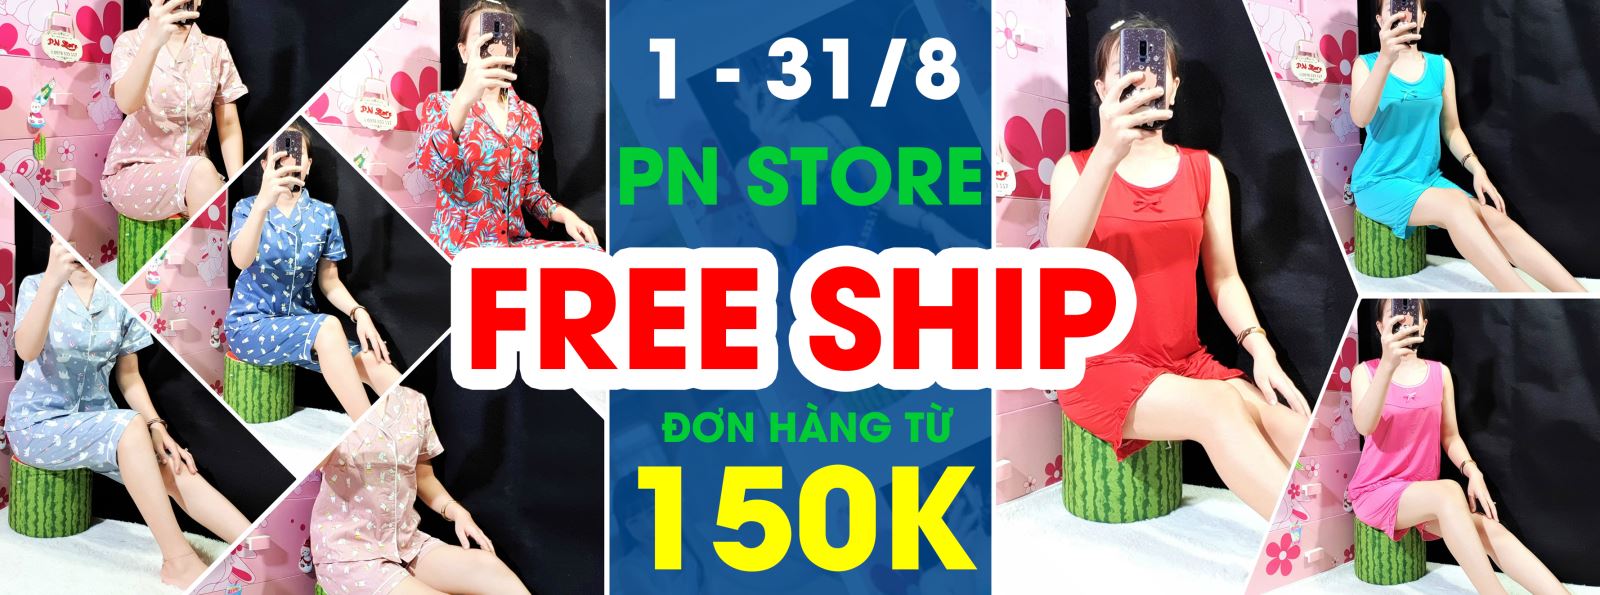 free ship đơn hàng từ 150k khi đặt mua quần áo tại PN Store trên shopee